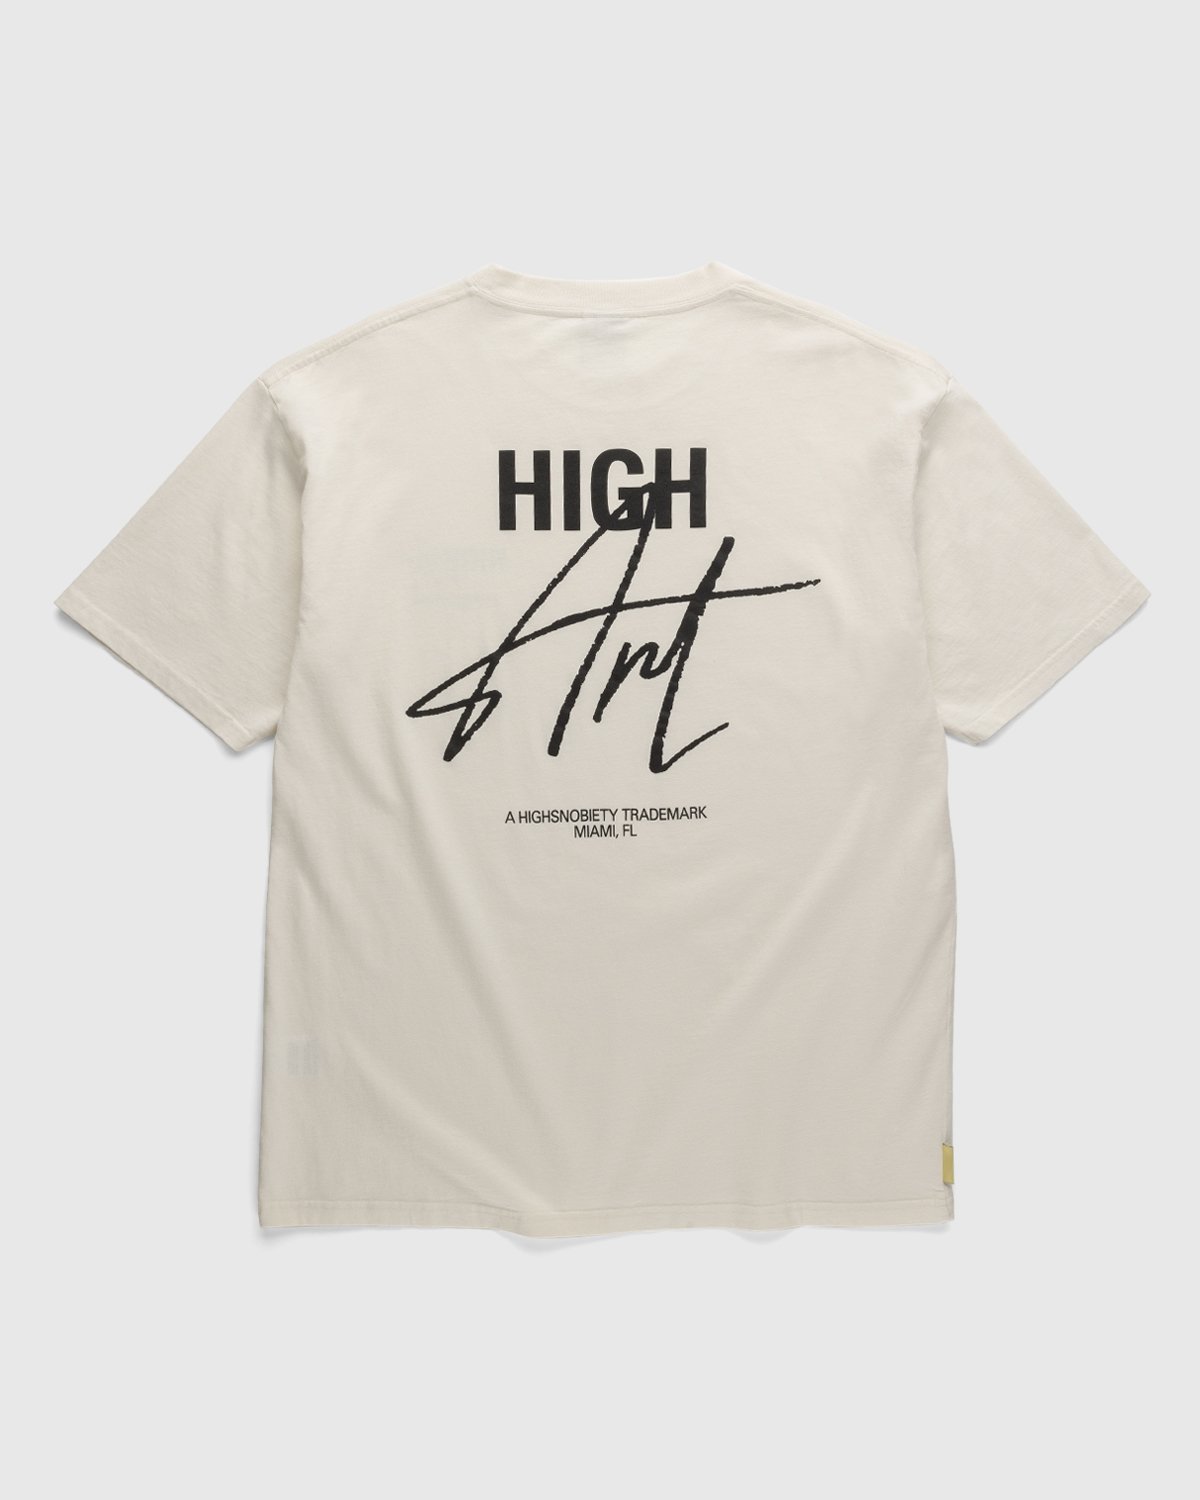 Highsnobiety - HIGHArt T-Shirt White - Clothing - White - Image 1